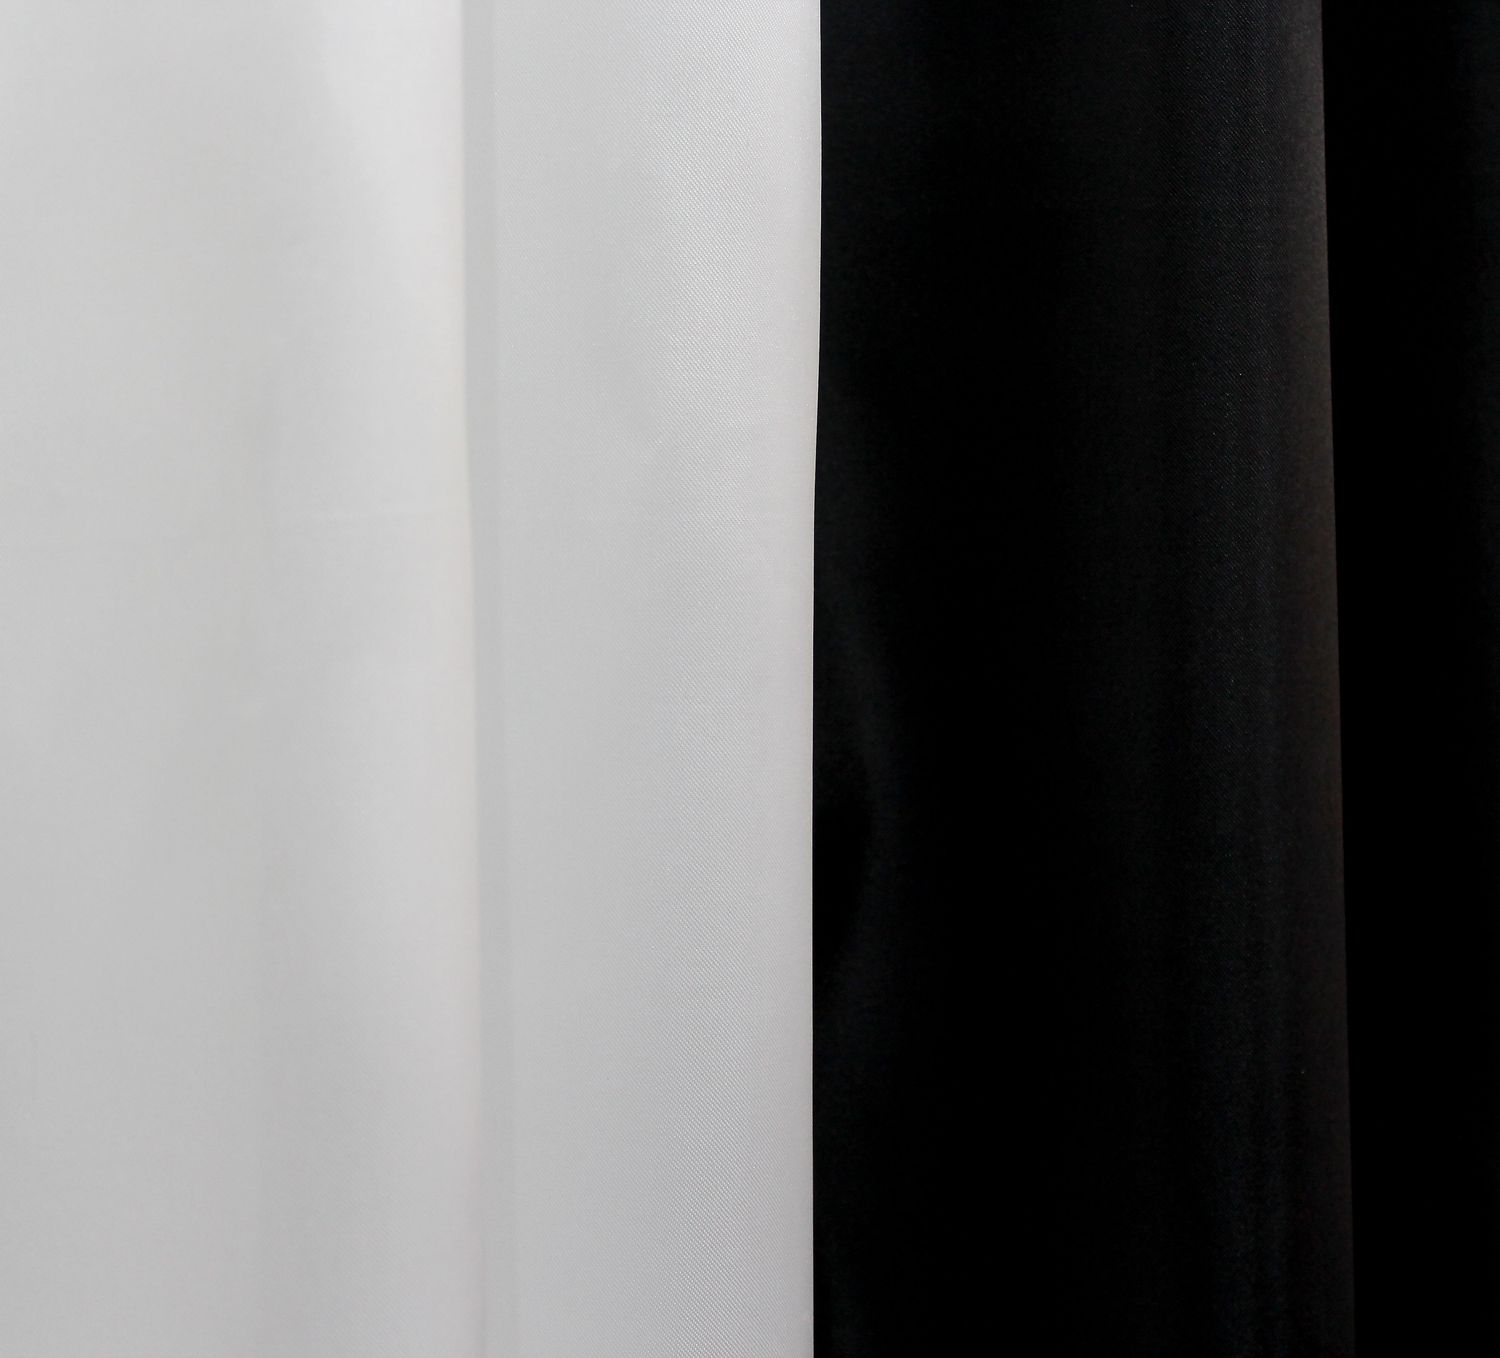 Комплект штор из ткани атлас цвет чёрный с белым 014дк 10-333, Черный с белым, Комплект штор (2 шт. 1,25х2,5 м.), 1,25 м., 2,5 м., 125, 250, 1,5 - 2,5 м., В комплекте 2 шт., Тесьма